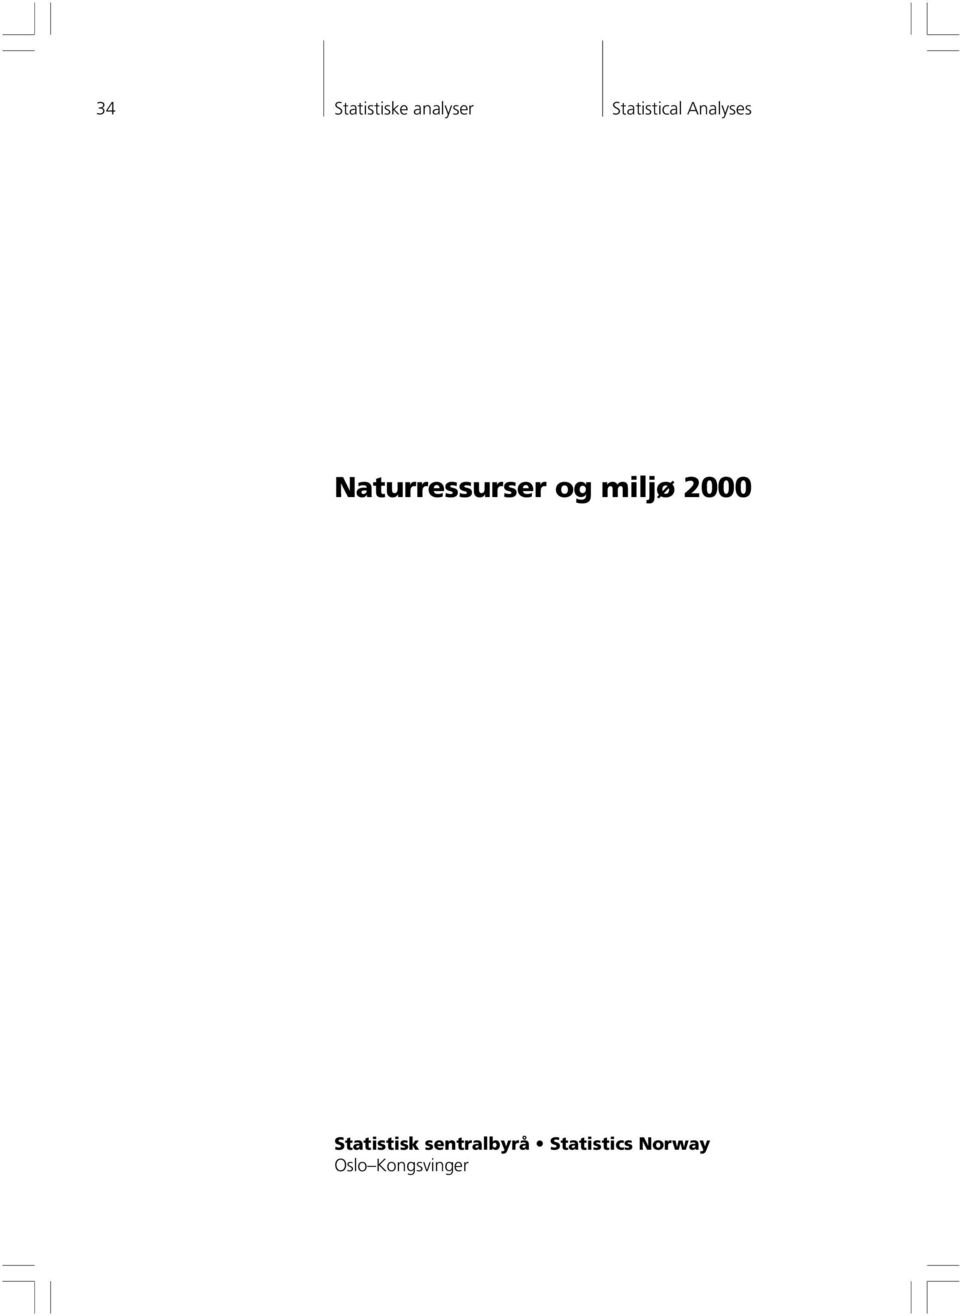 Naturressurser og miljø 2000